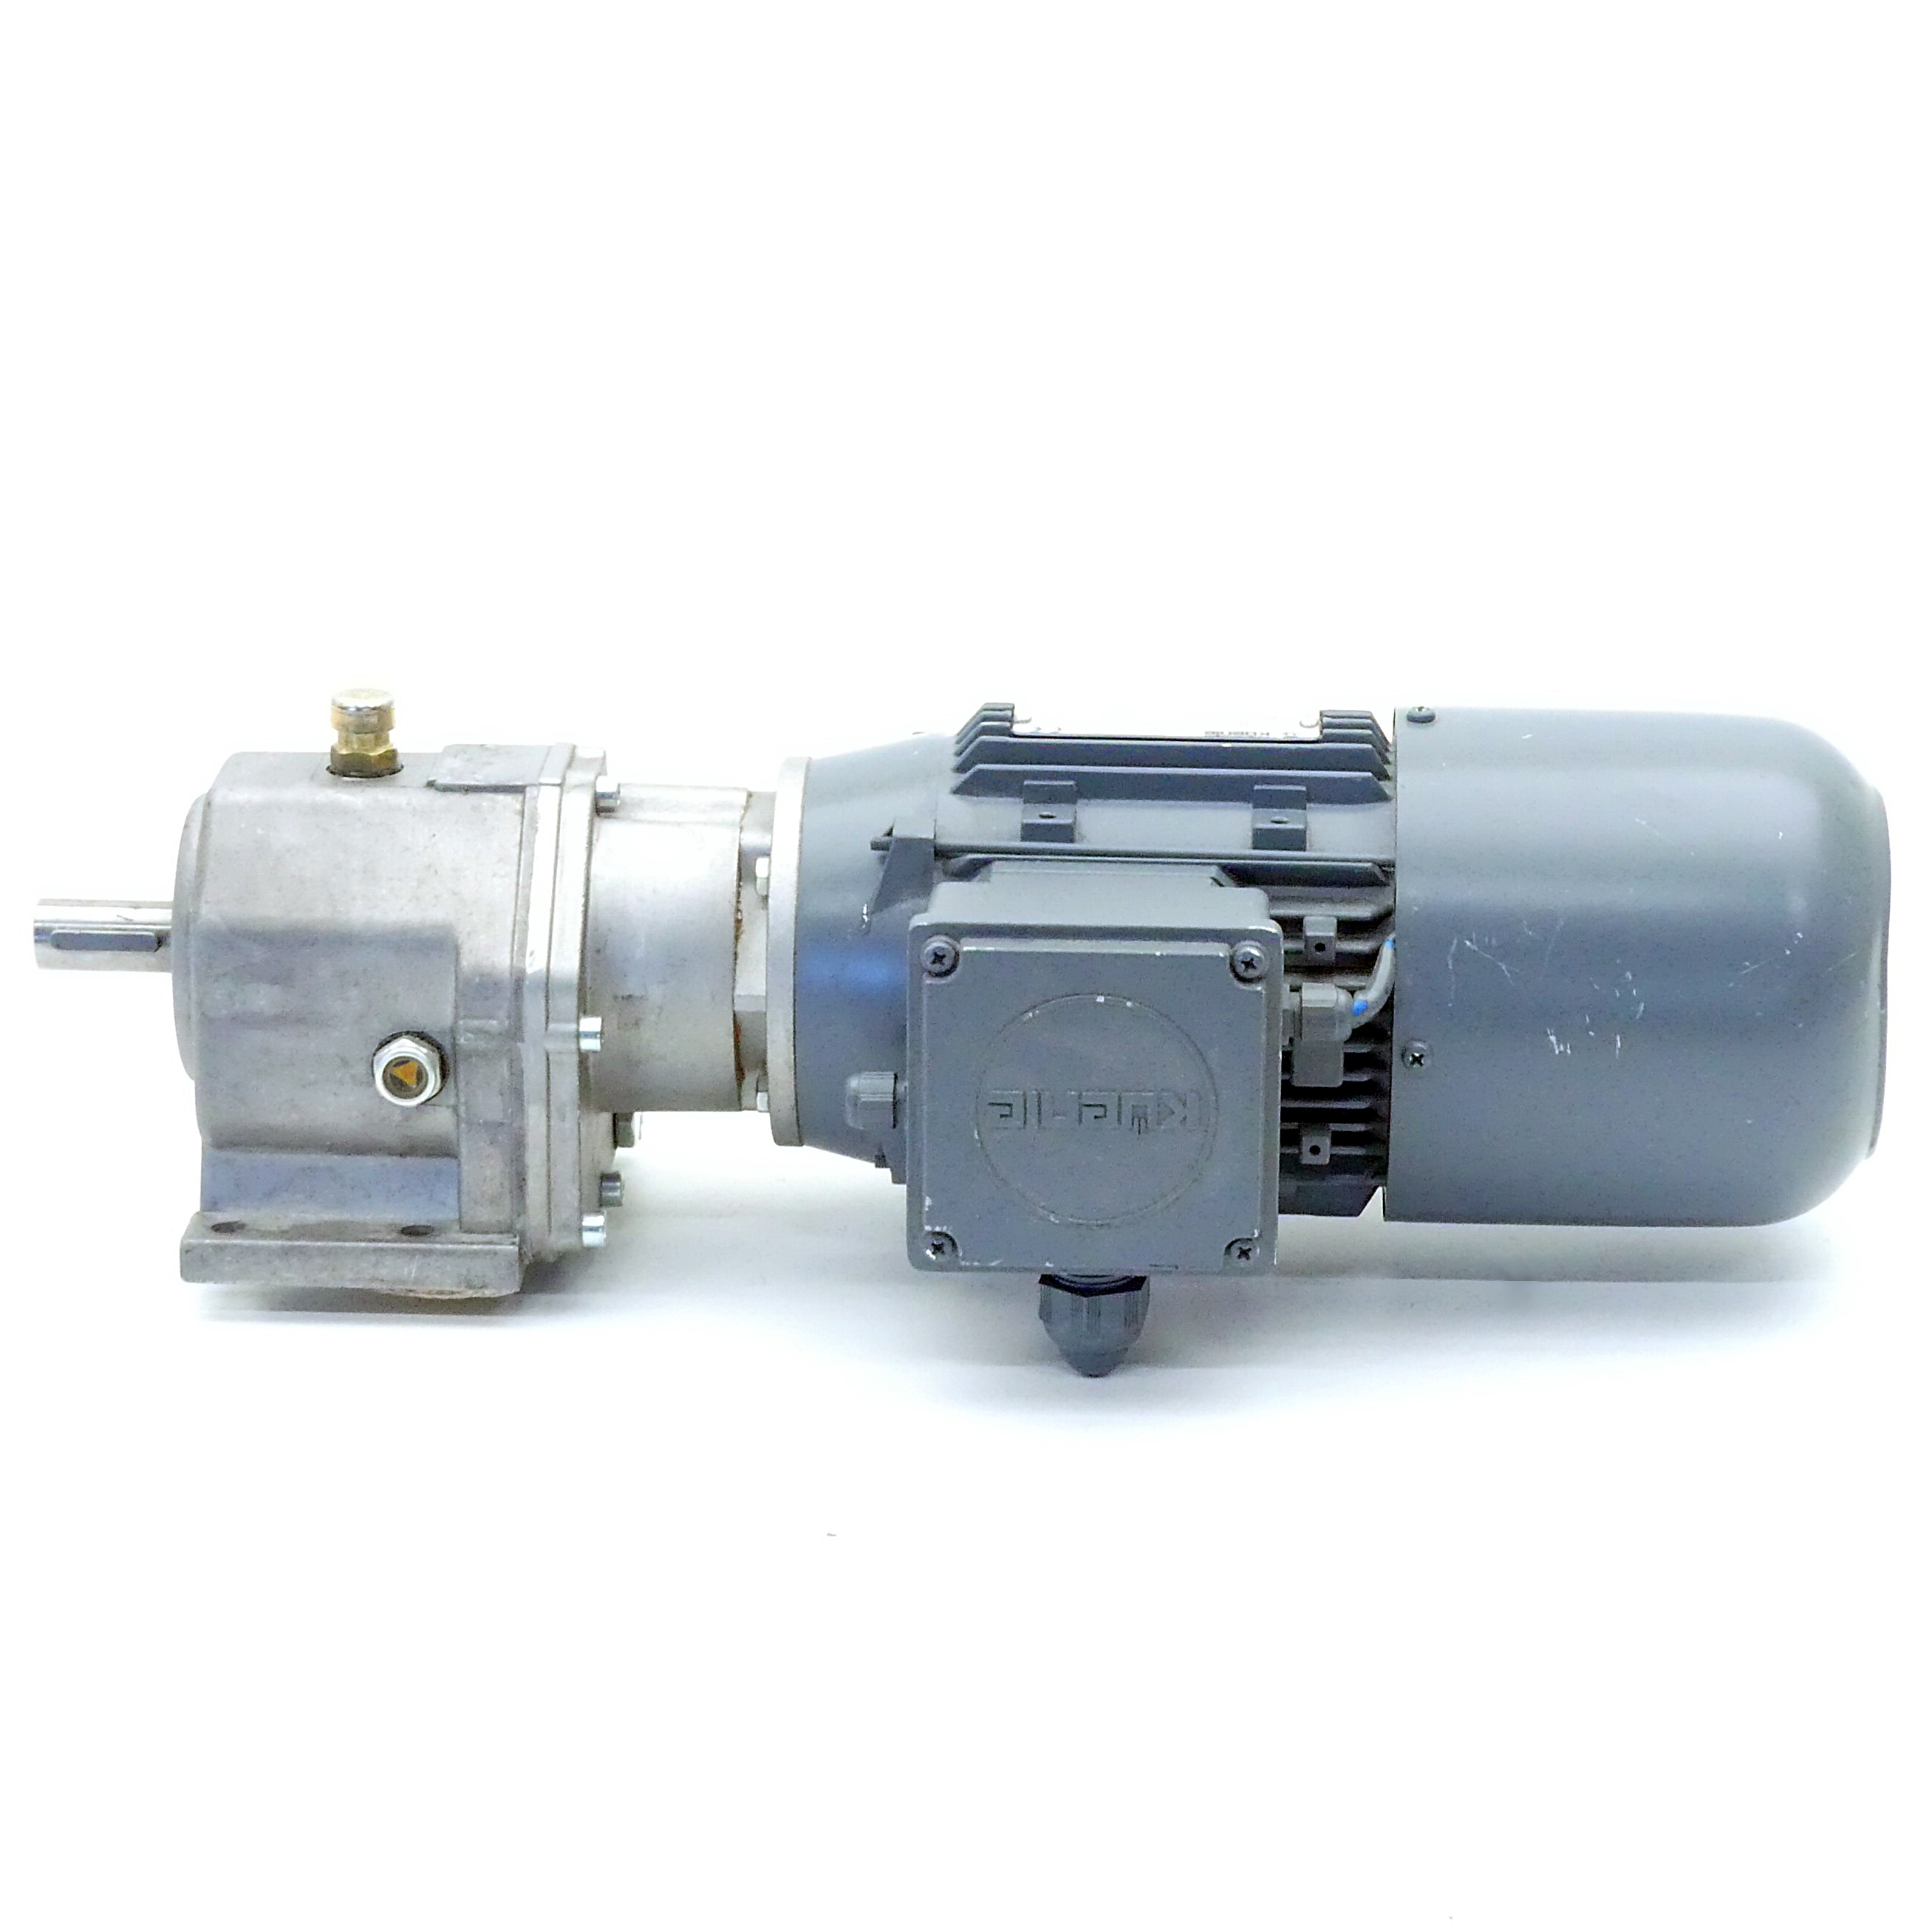 gear motor KTENB 71 G 4 V230 